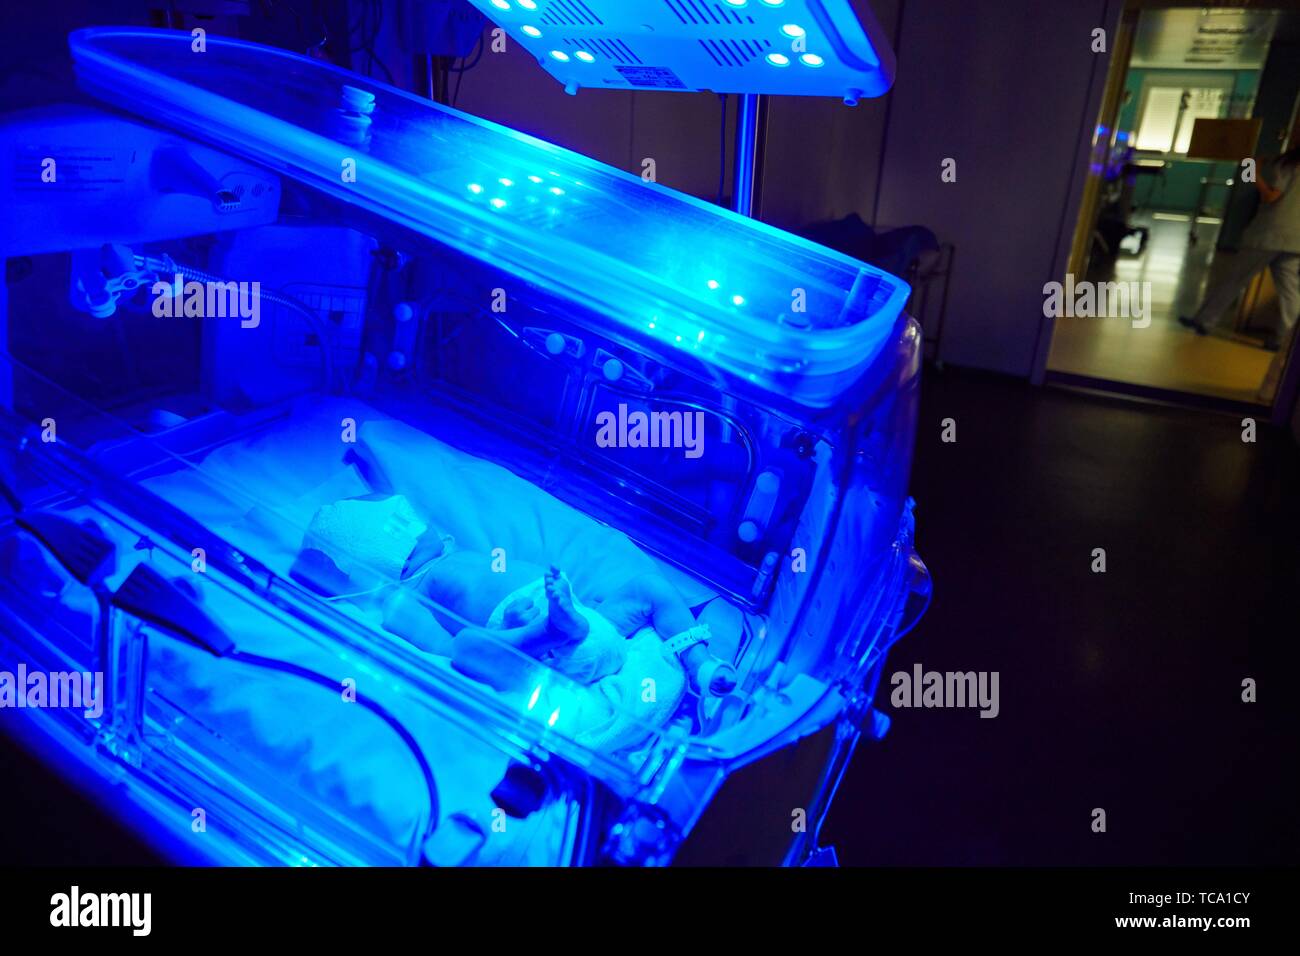 Bebé en incubadora, la fototerapia neonatal, pediatría, asistencia médica, Unidad de Cuidados Intensivos Neonatal, UVI, UCI, Hospital Donostia, San Sebastián, Foto de stock